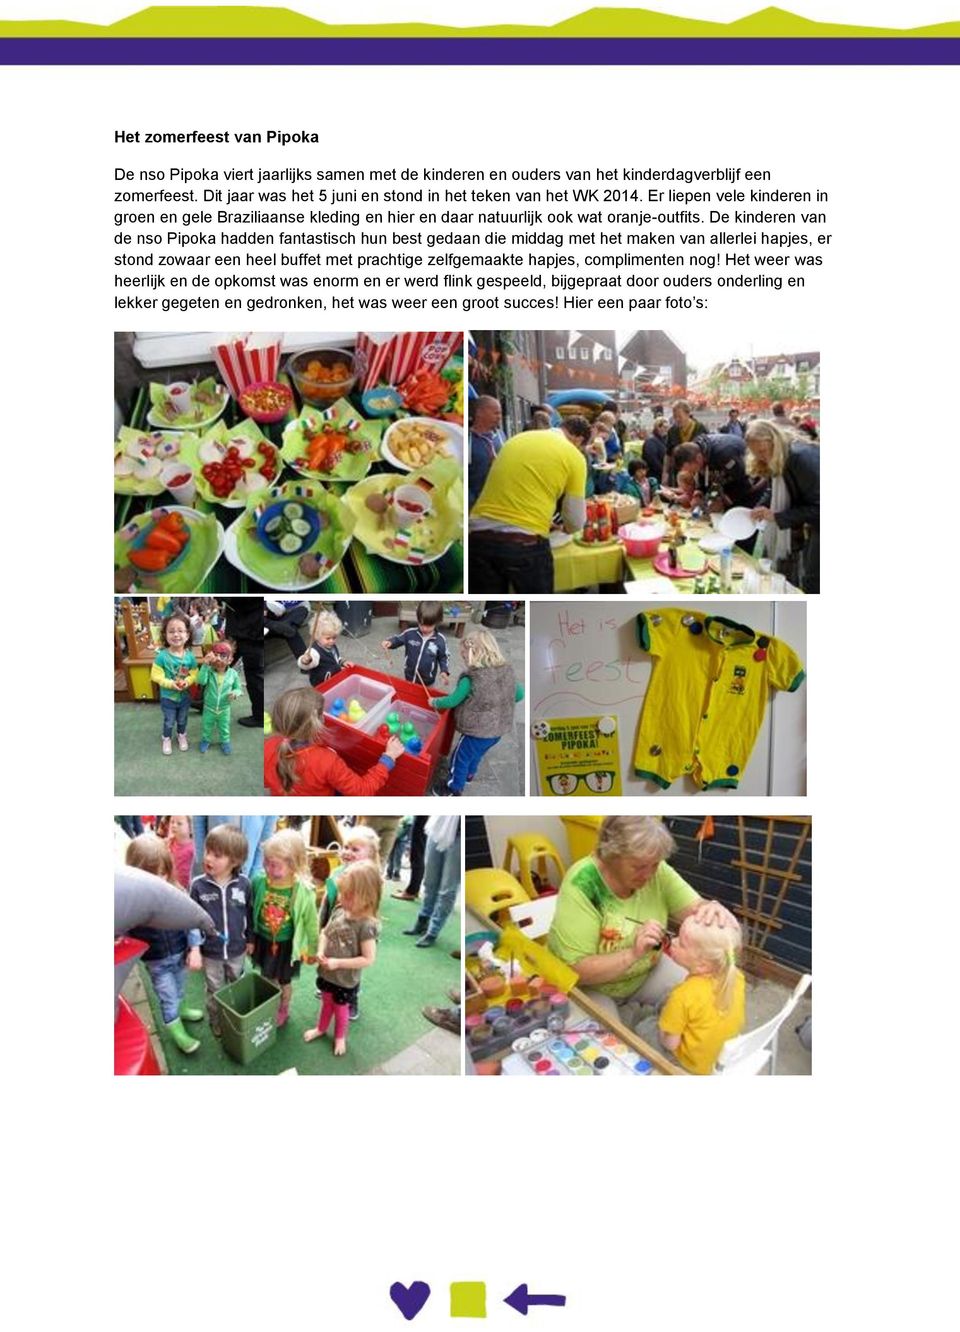 Er liepen vele kinderen in groen en gele Braziliaanse kleding en hier en daar natuurlijk ook wat oranje-outfits.